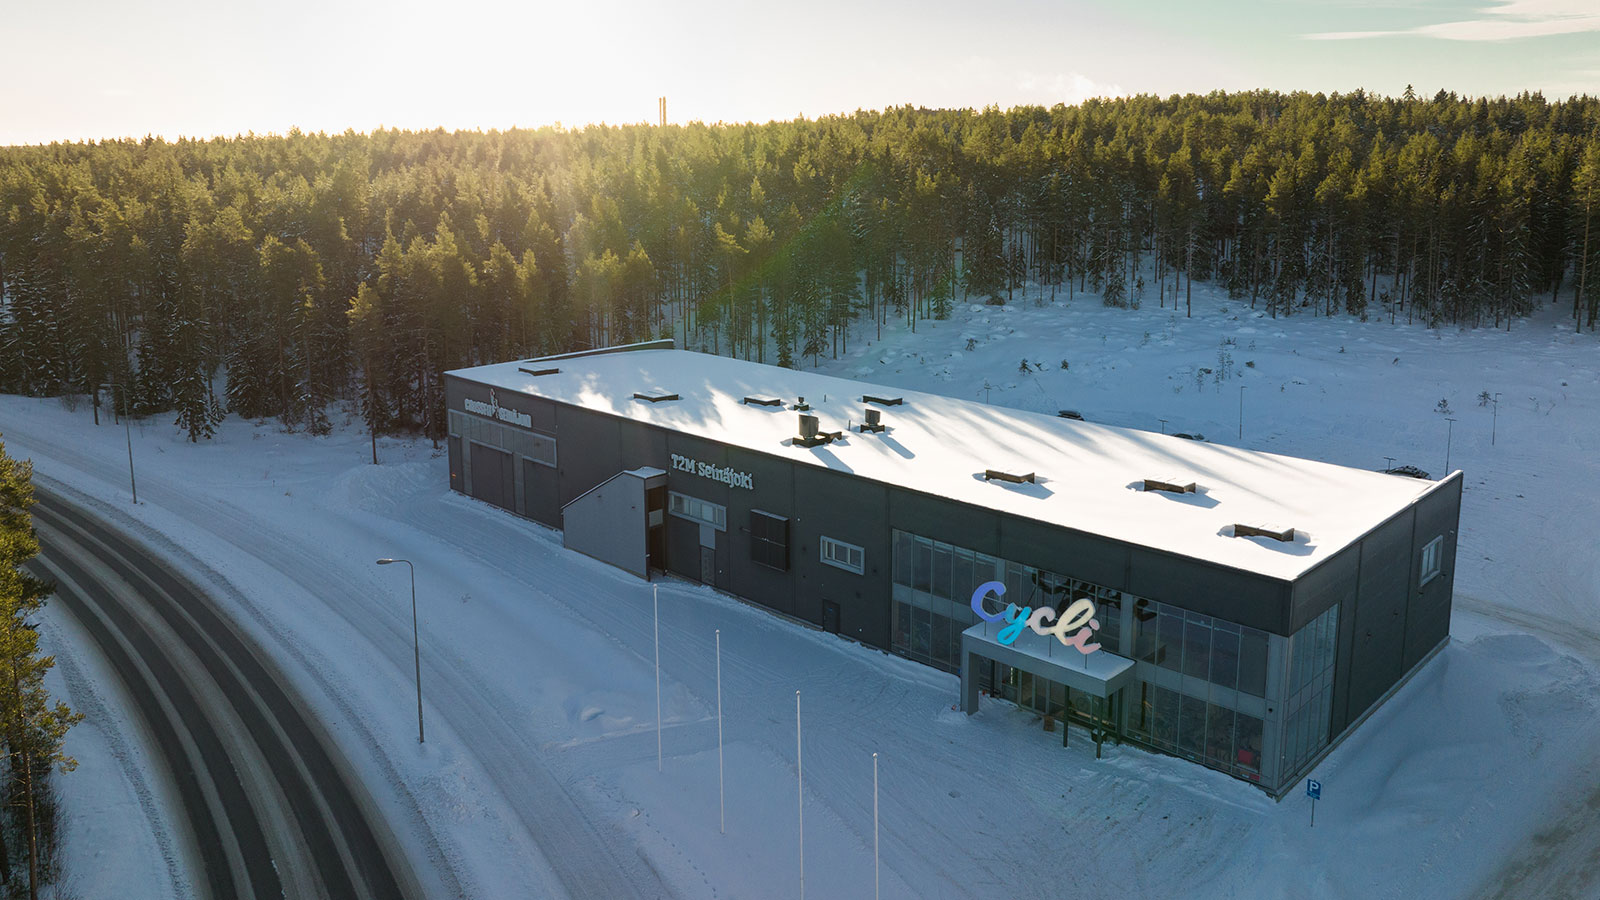 Seinäjoen tuliterä toimitila sijaitsee Jouppilan urheilukeskuksen sydämessä, luonto- ja pyöräilypolkujen tyvessä